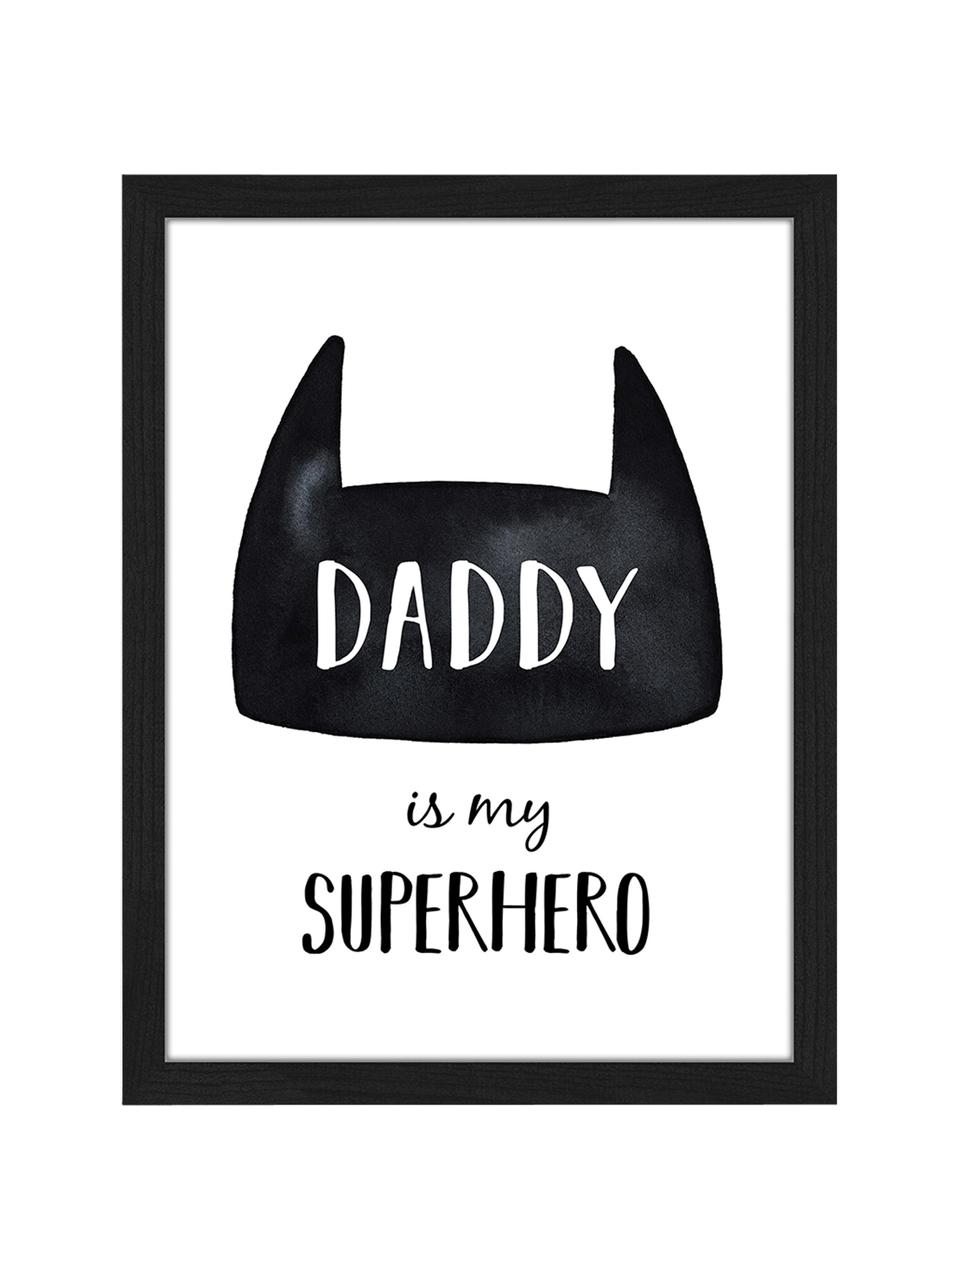 Gerahmter Digitaldruck Daddy is my Superhero, Bild: Digitaldruck auf Papier, , Rahmen: Holz, lackiert, Front: Plexiglas, Schwarz, Weiß, B 33 x H 43 cm